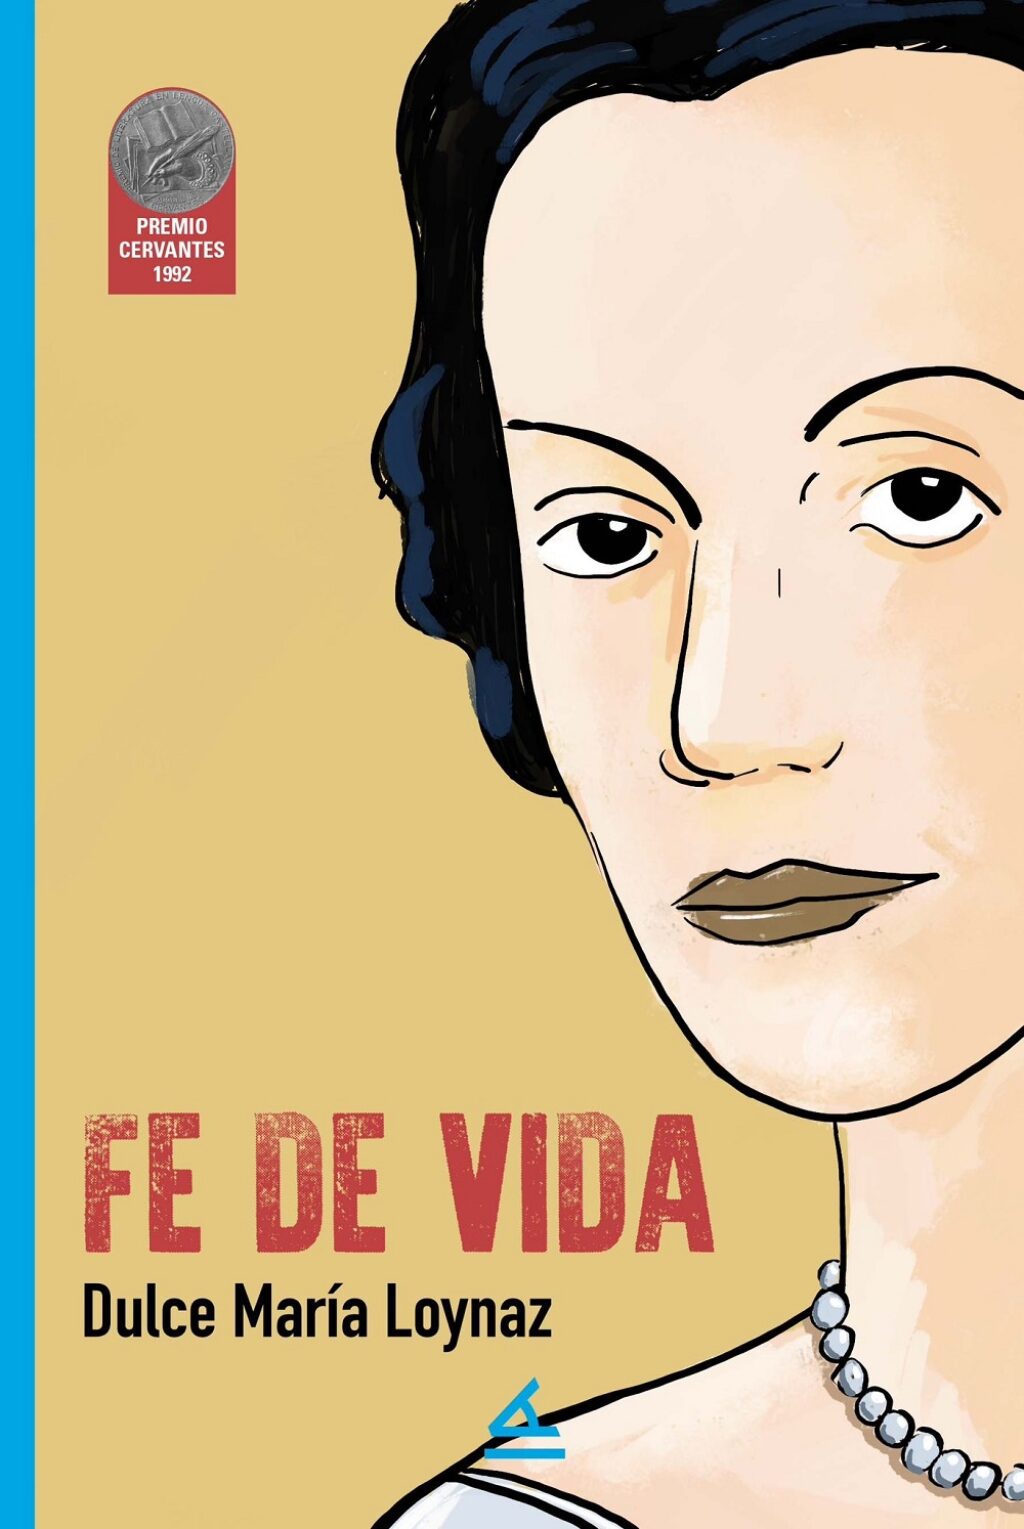 Imagen de portada de "Fe de vida", novela de Dulce María Loynaz donde narra su vida con el que fuera su esposo, Pablo Álvarez Cañas.